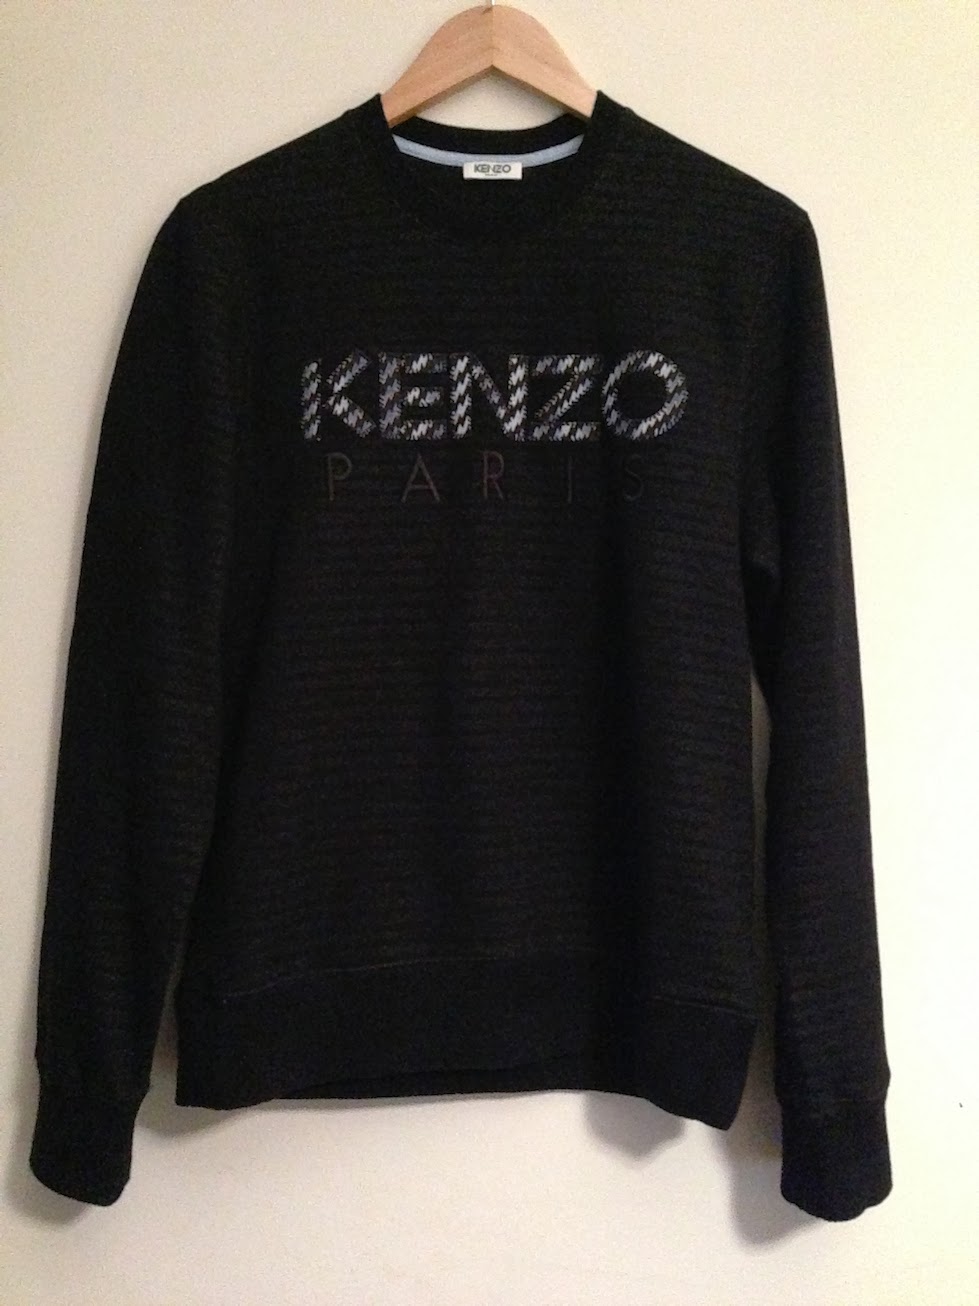 KENZOのスウェットをとりあえず抑えておこう - 30代「メンズ」のためのファッション